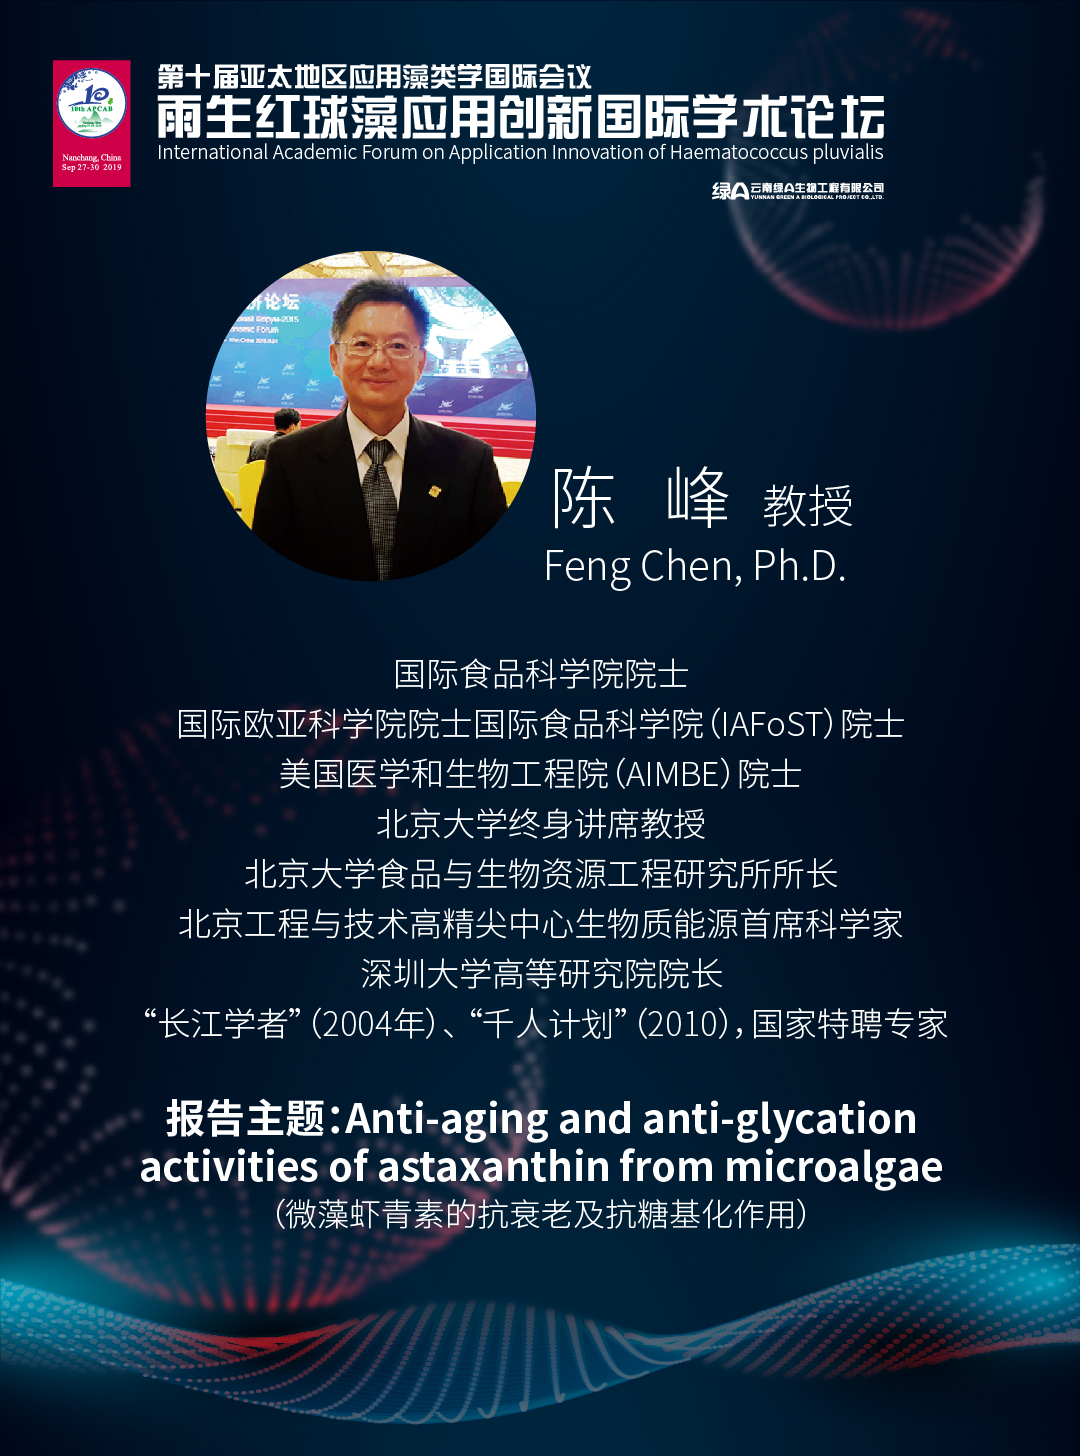 陈峰 博士 国际食品科学院院士、国际欧亚科学院院士、深圳大学高等研究院院长